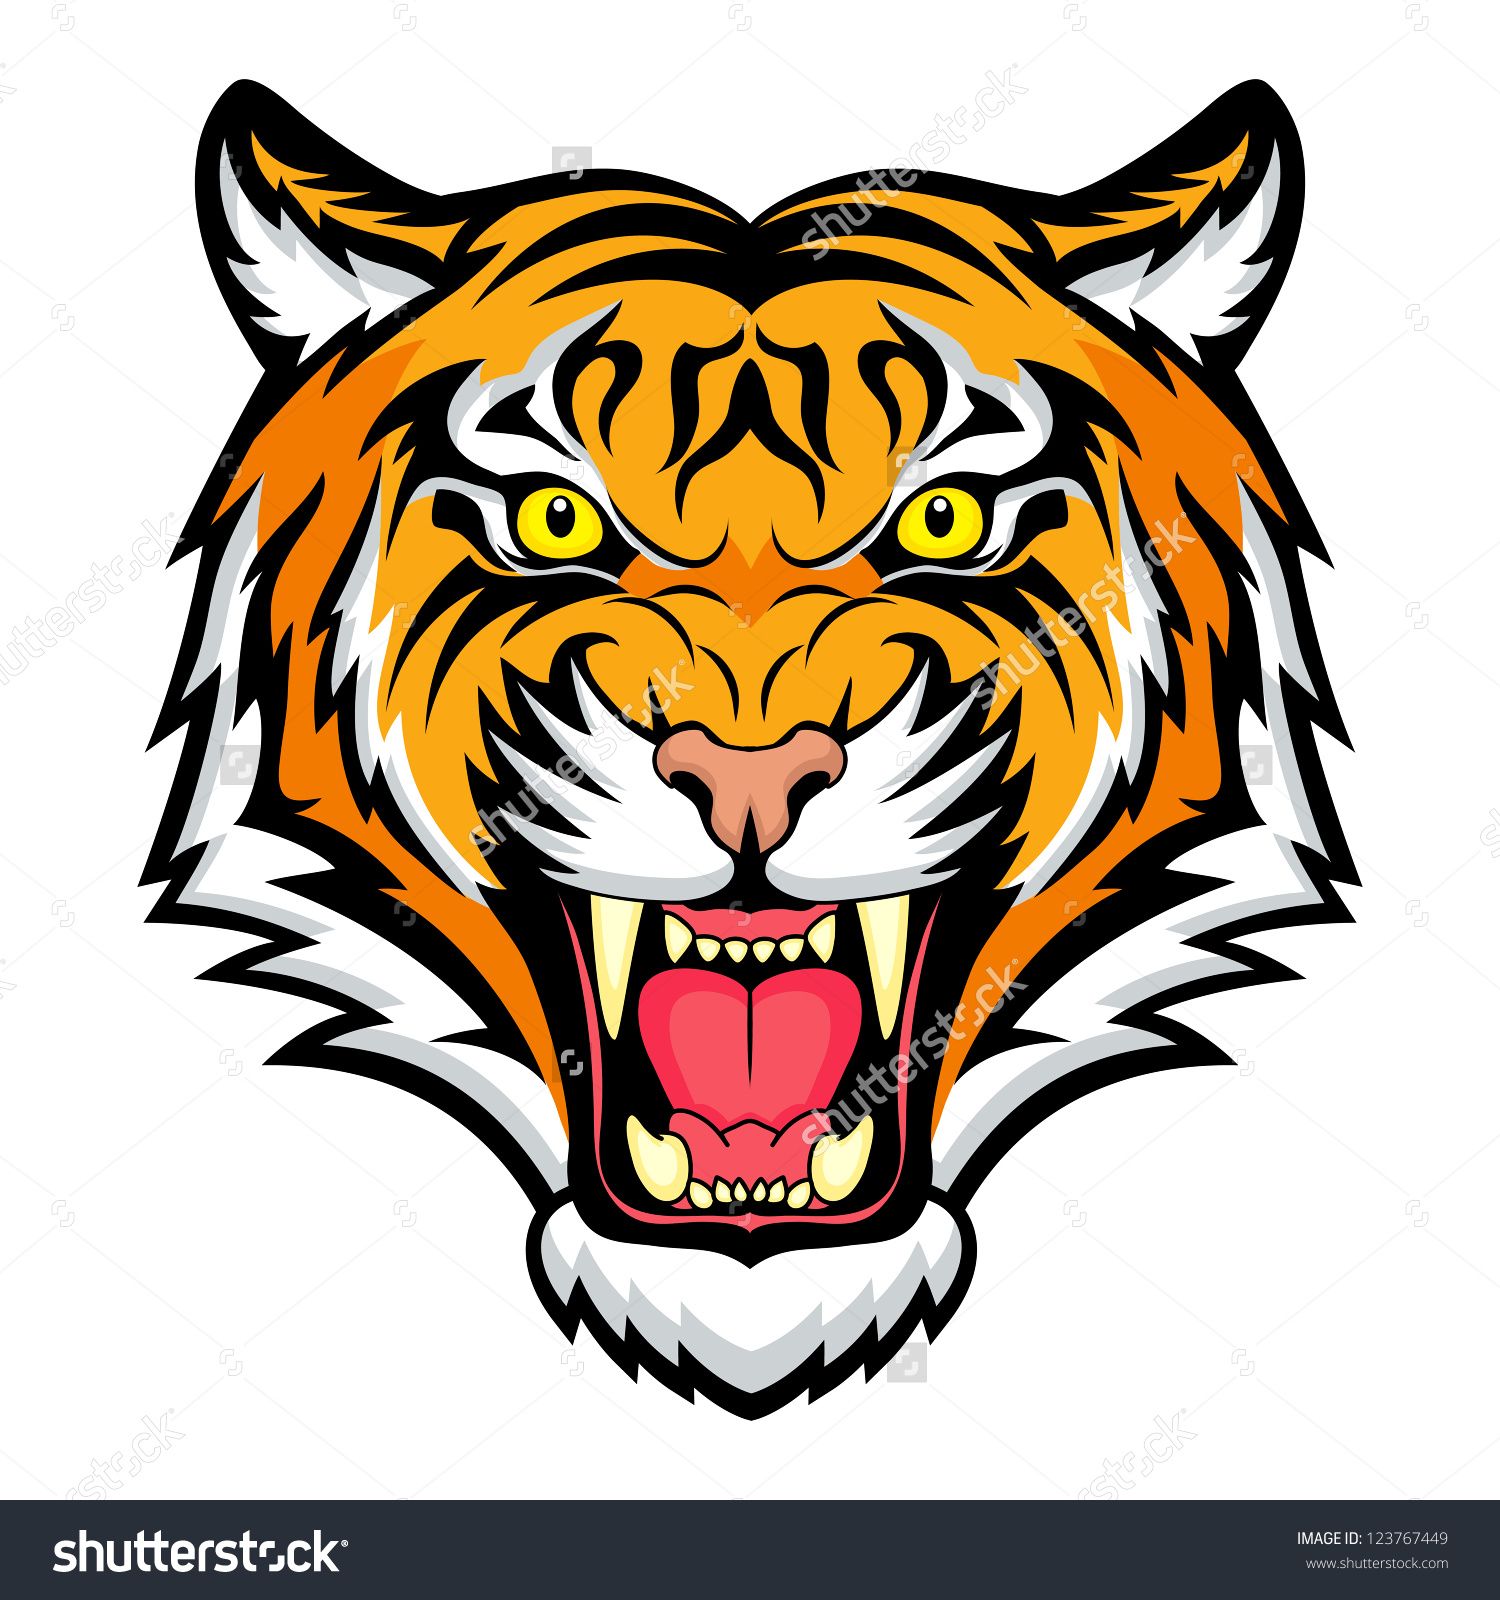 Tiger Anger. Vector Illustration Of A Tiger Head. - 123767449 ...